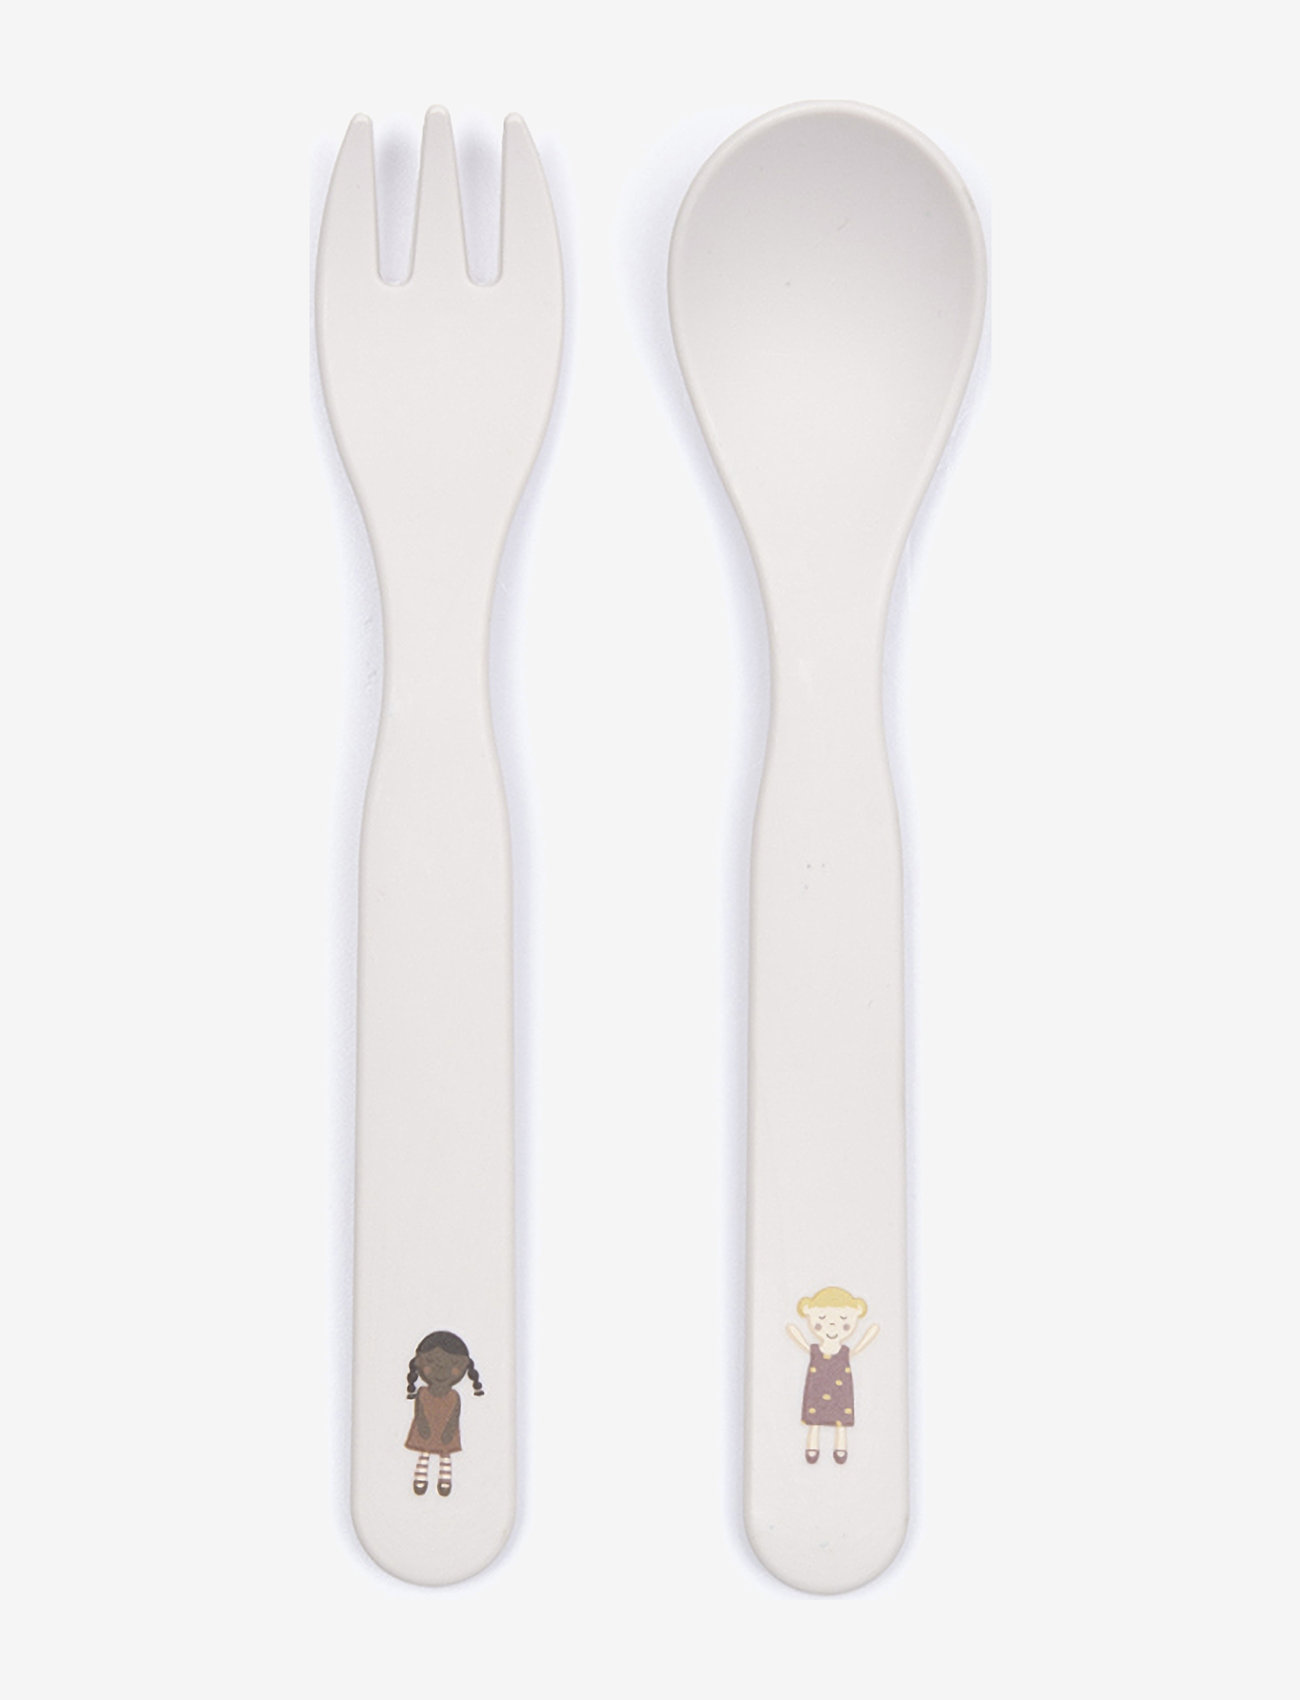 Smallstuff - Fork and spoon, dolls,  in Gift box - die niedrigsten preise - cream - 0